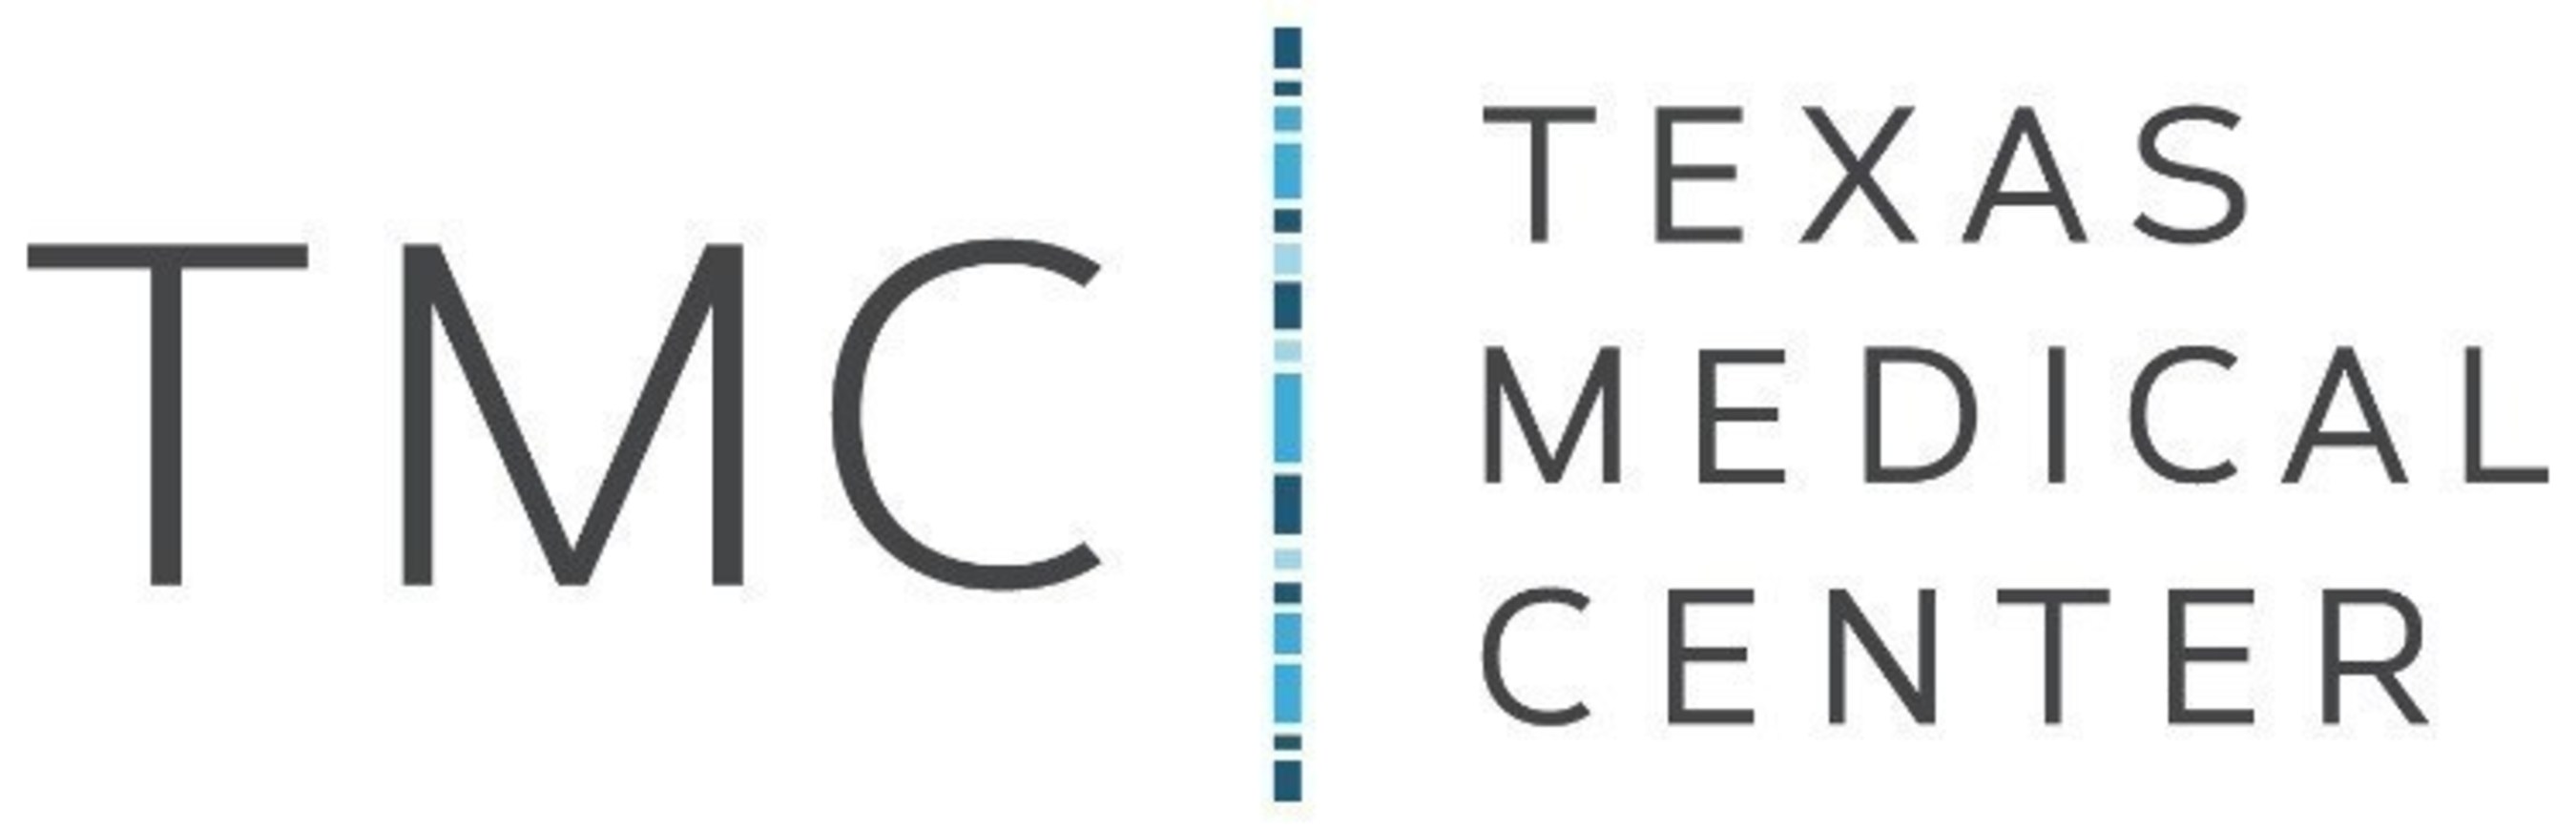 Texas Medical Center logo